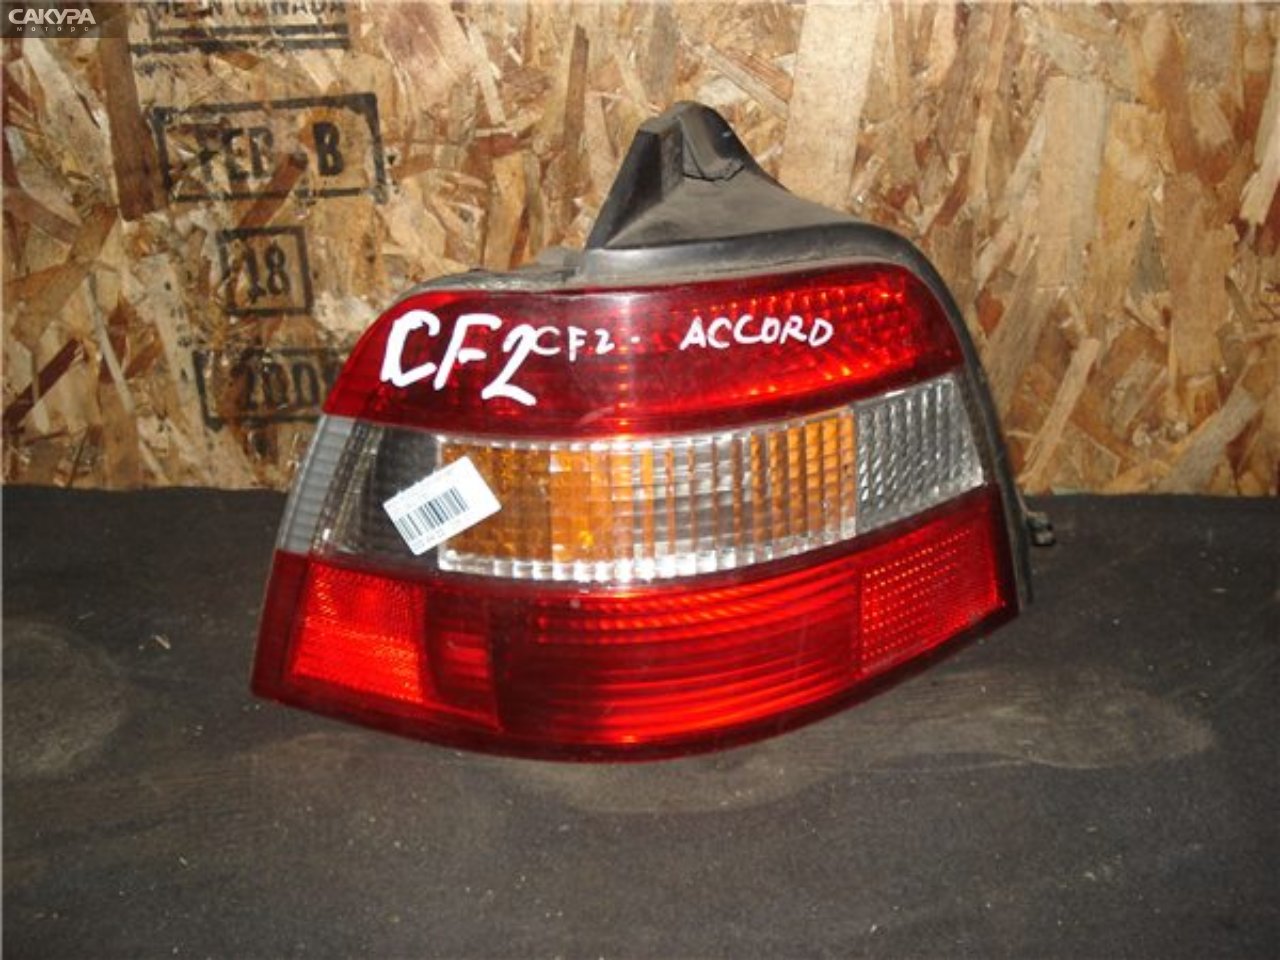 Фонарь стоп-сигнала левый Honda Accord Wagon CE1 043-1250: купить в Сакура Красноярск.